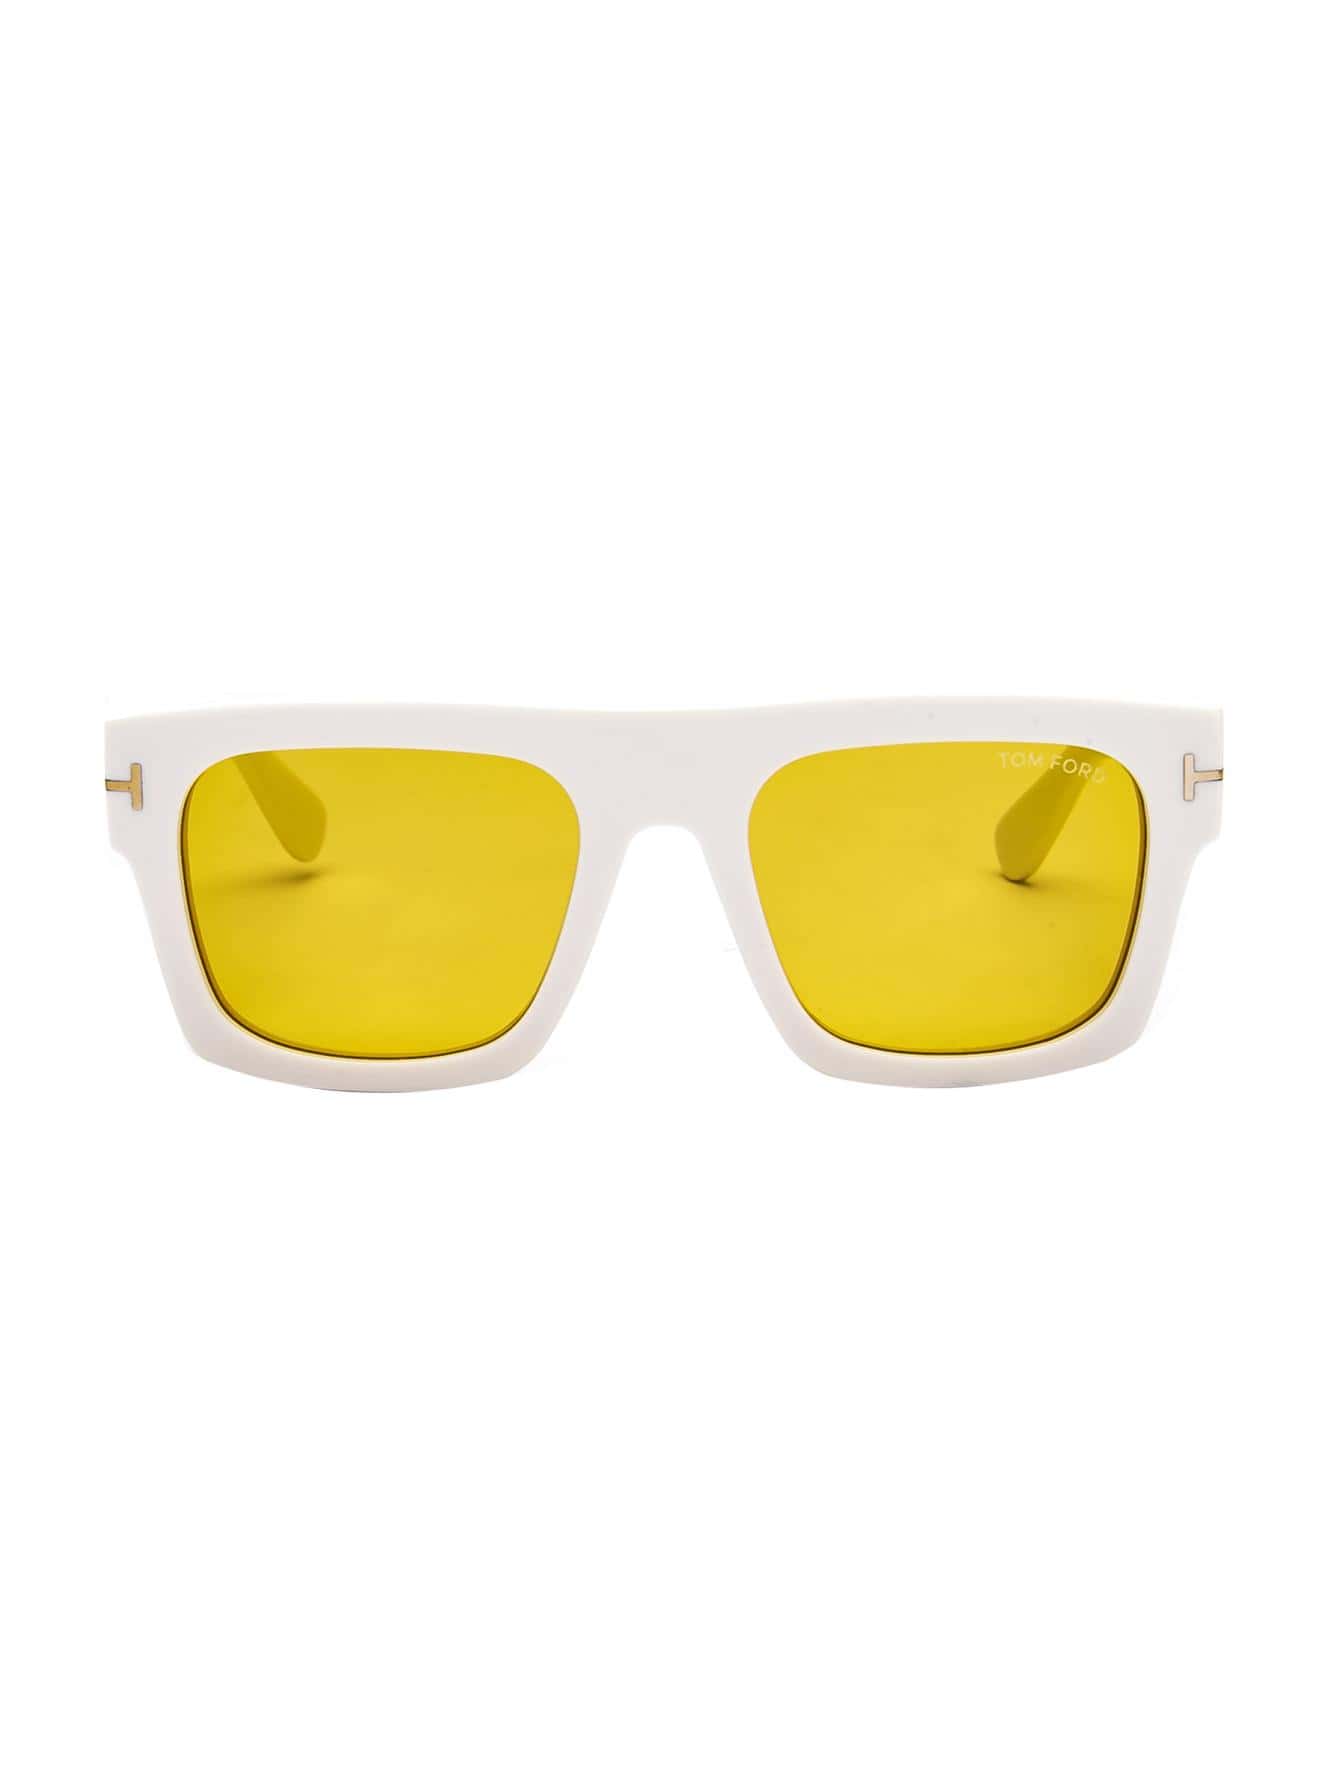 Женские солнцезащитные очки Tom Ford DECOR FT071125E, многоцветный солнцезащитные очки tom ford квадратные оправа пластик для женщин черепаховый